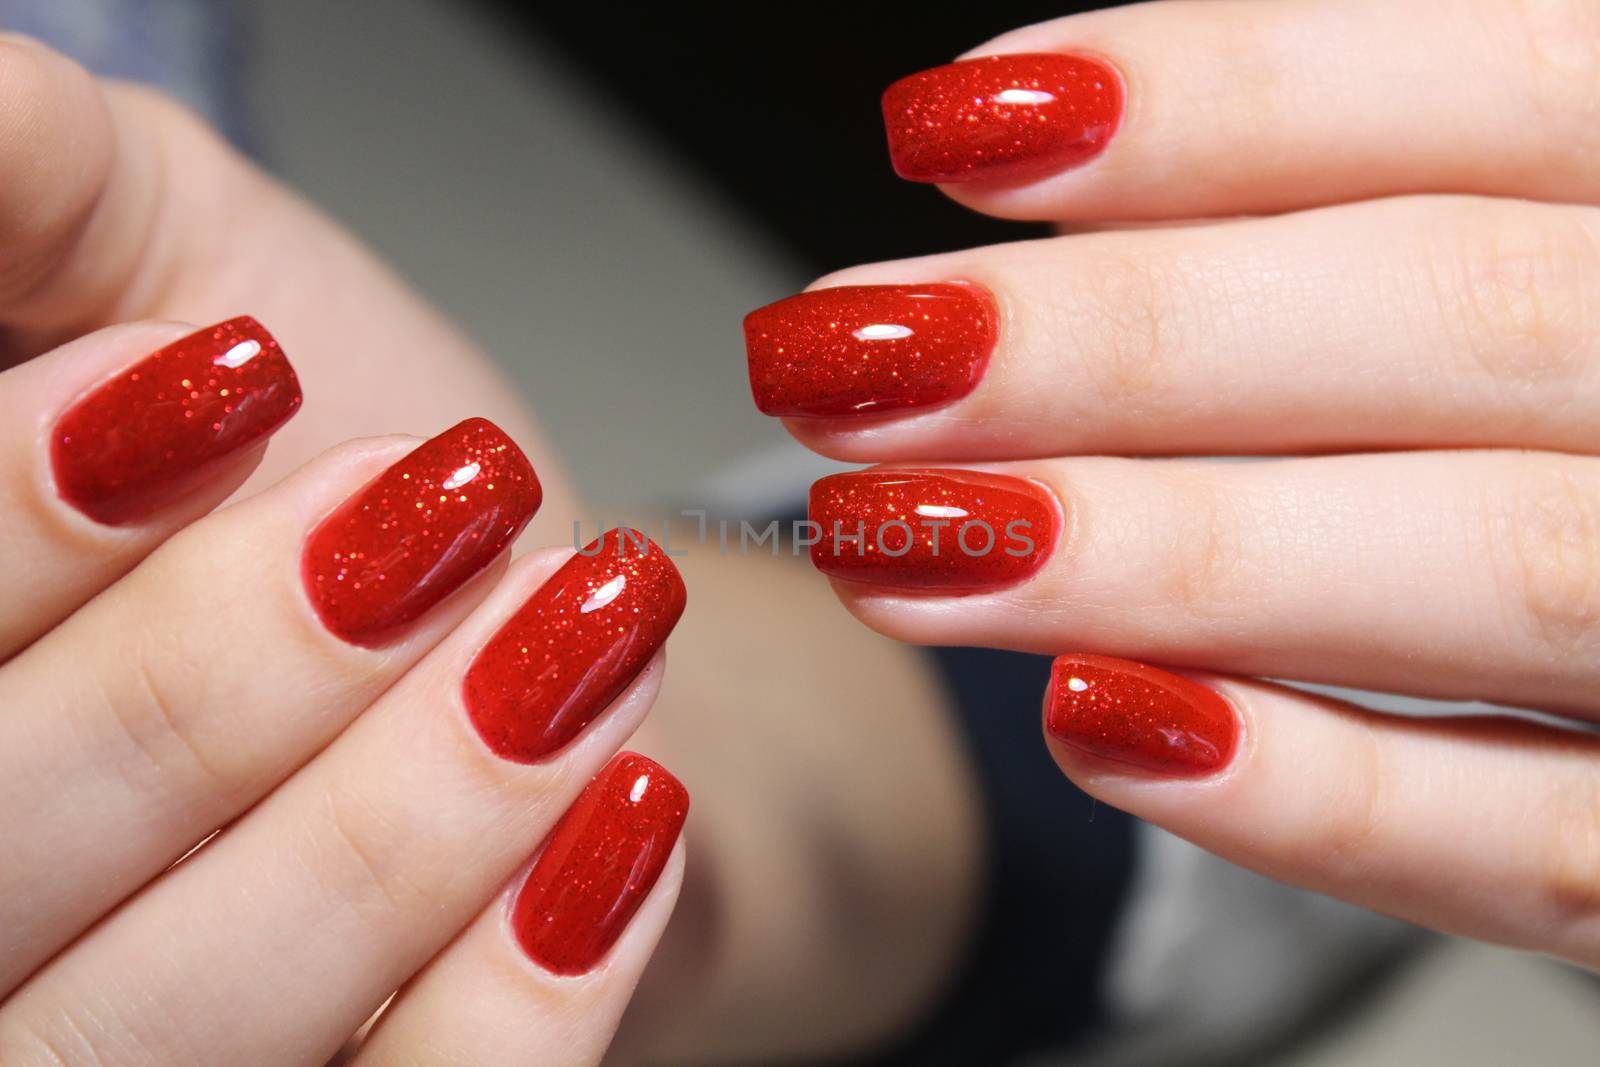 Bright red manicure design by SmirMaxStock